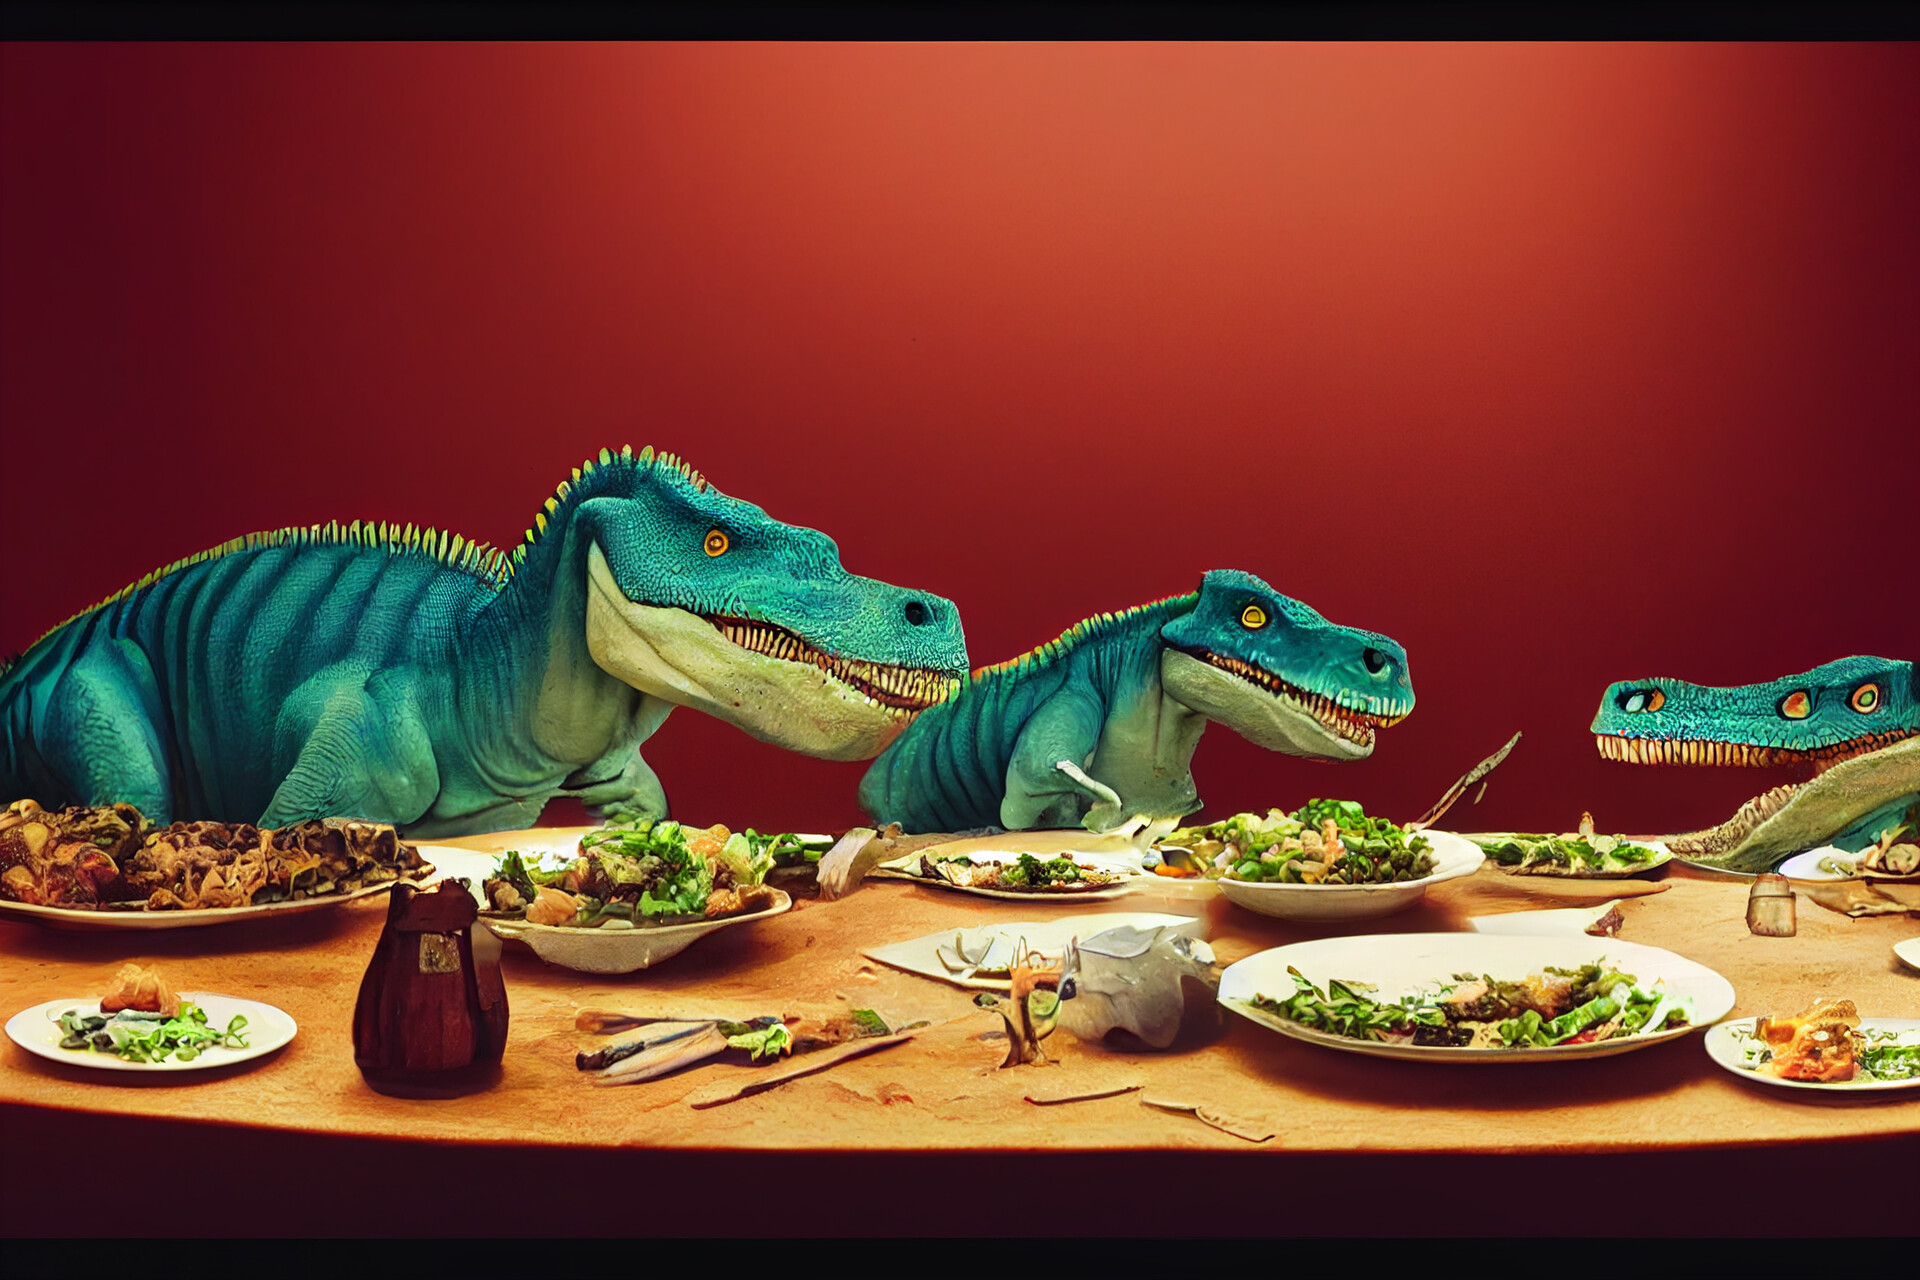 https://cdna.artstation.com/p/assets/images/images/054/068/164/large/aenvoker-dinosaurs-eating-dinner-1.jpg?1663691519